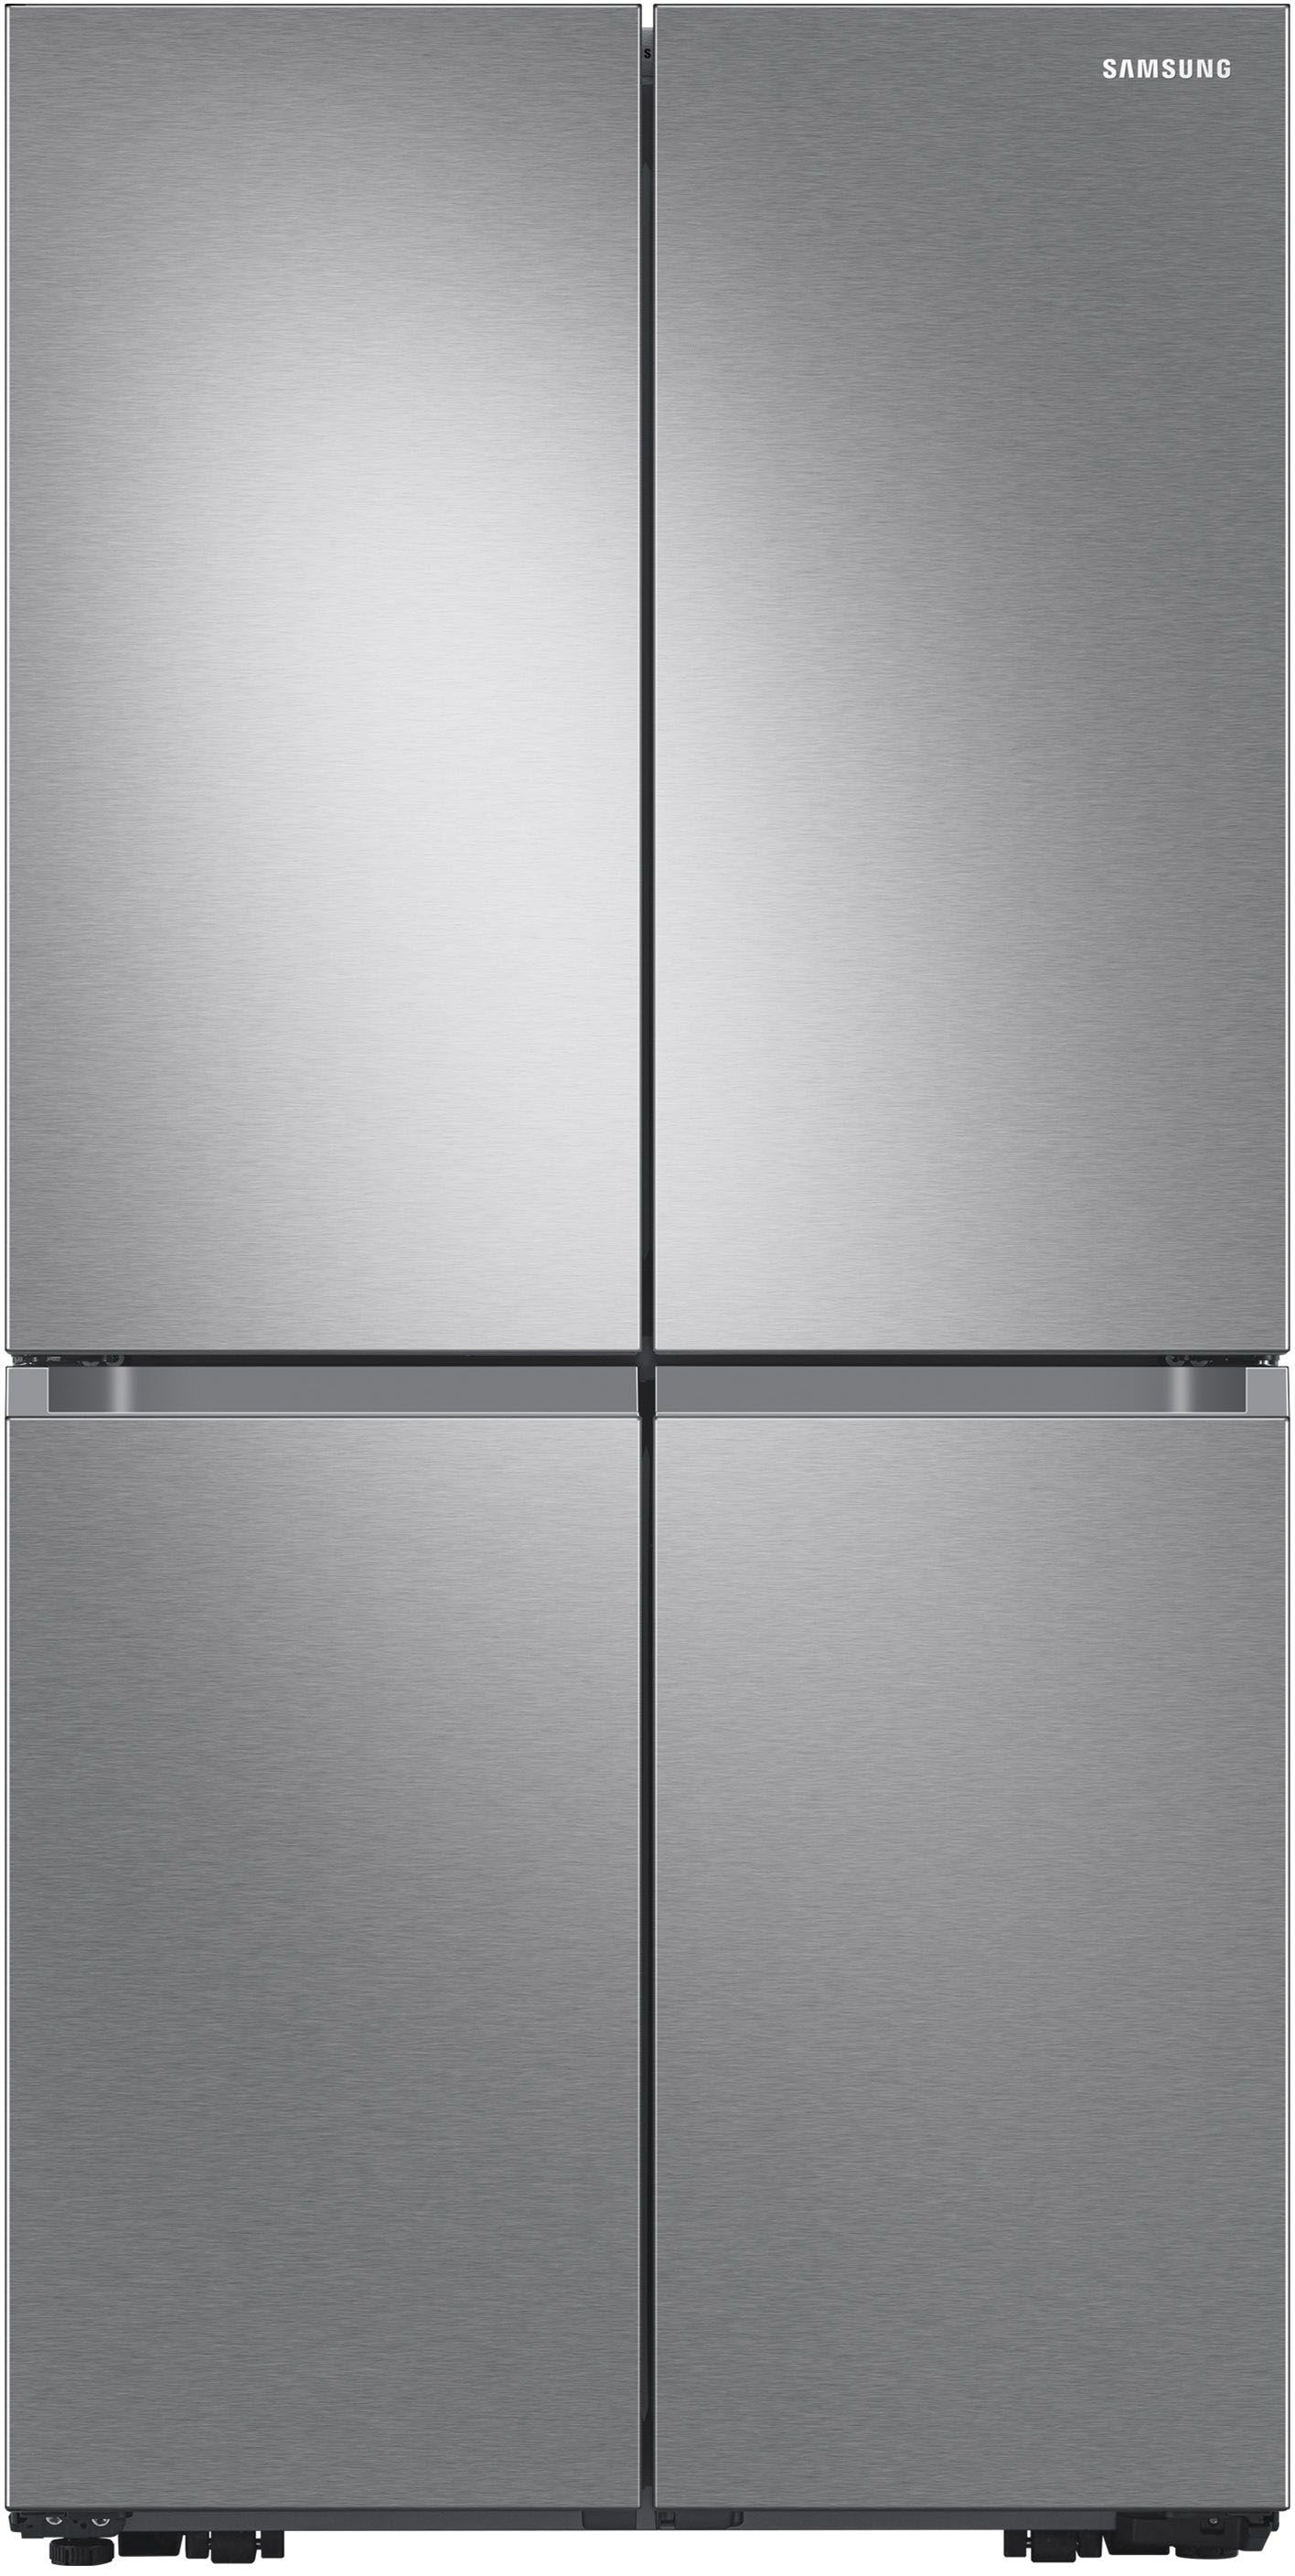 Samsung 29 cu. ft. 4-Door Flex French Door Refrigerator with WiFi, AutoFill Water Pitcher & Dual ... | Best Buy U.S.